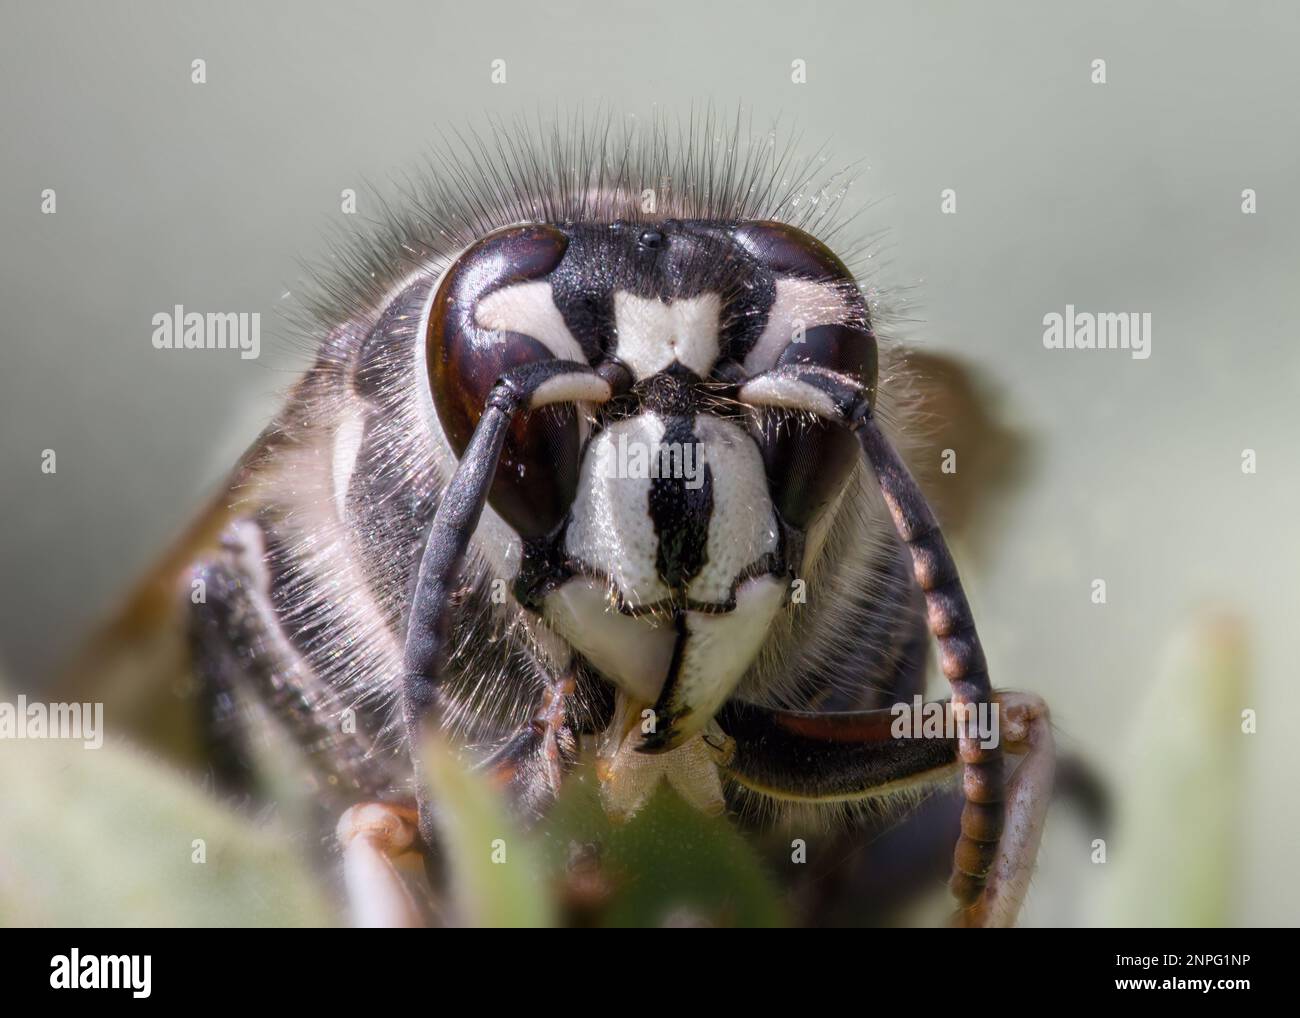 Vista frontale estremamente ravvicinata del calabrone dalla faccia calva che mostra i dettagli della testa Foto Stock